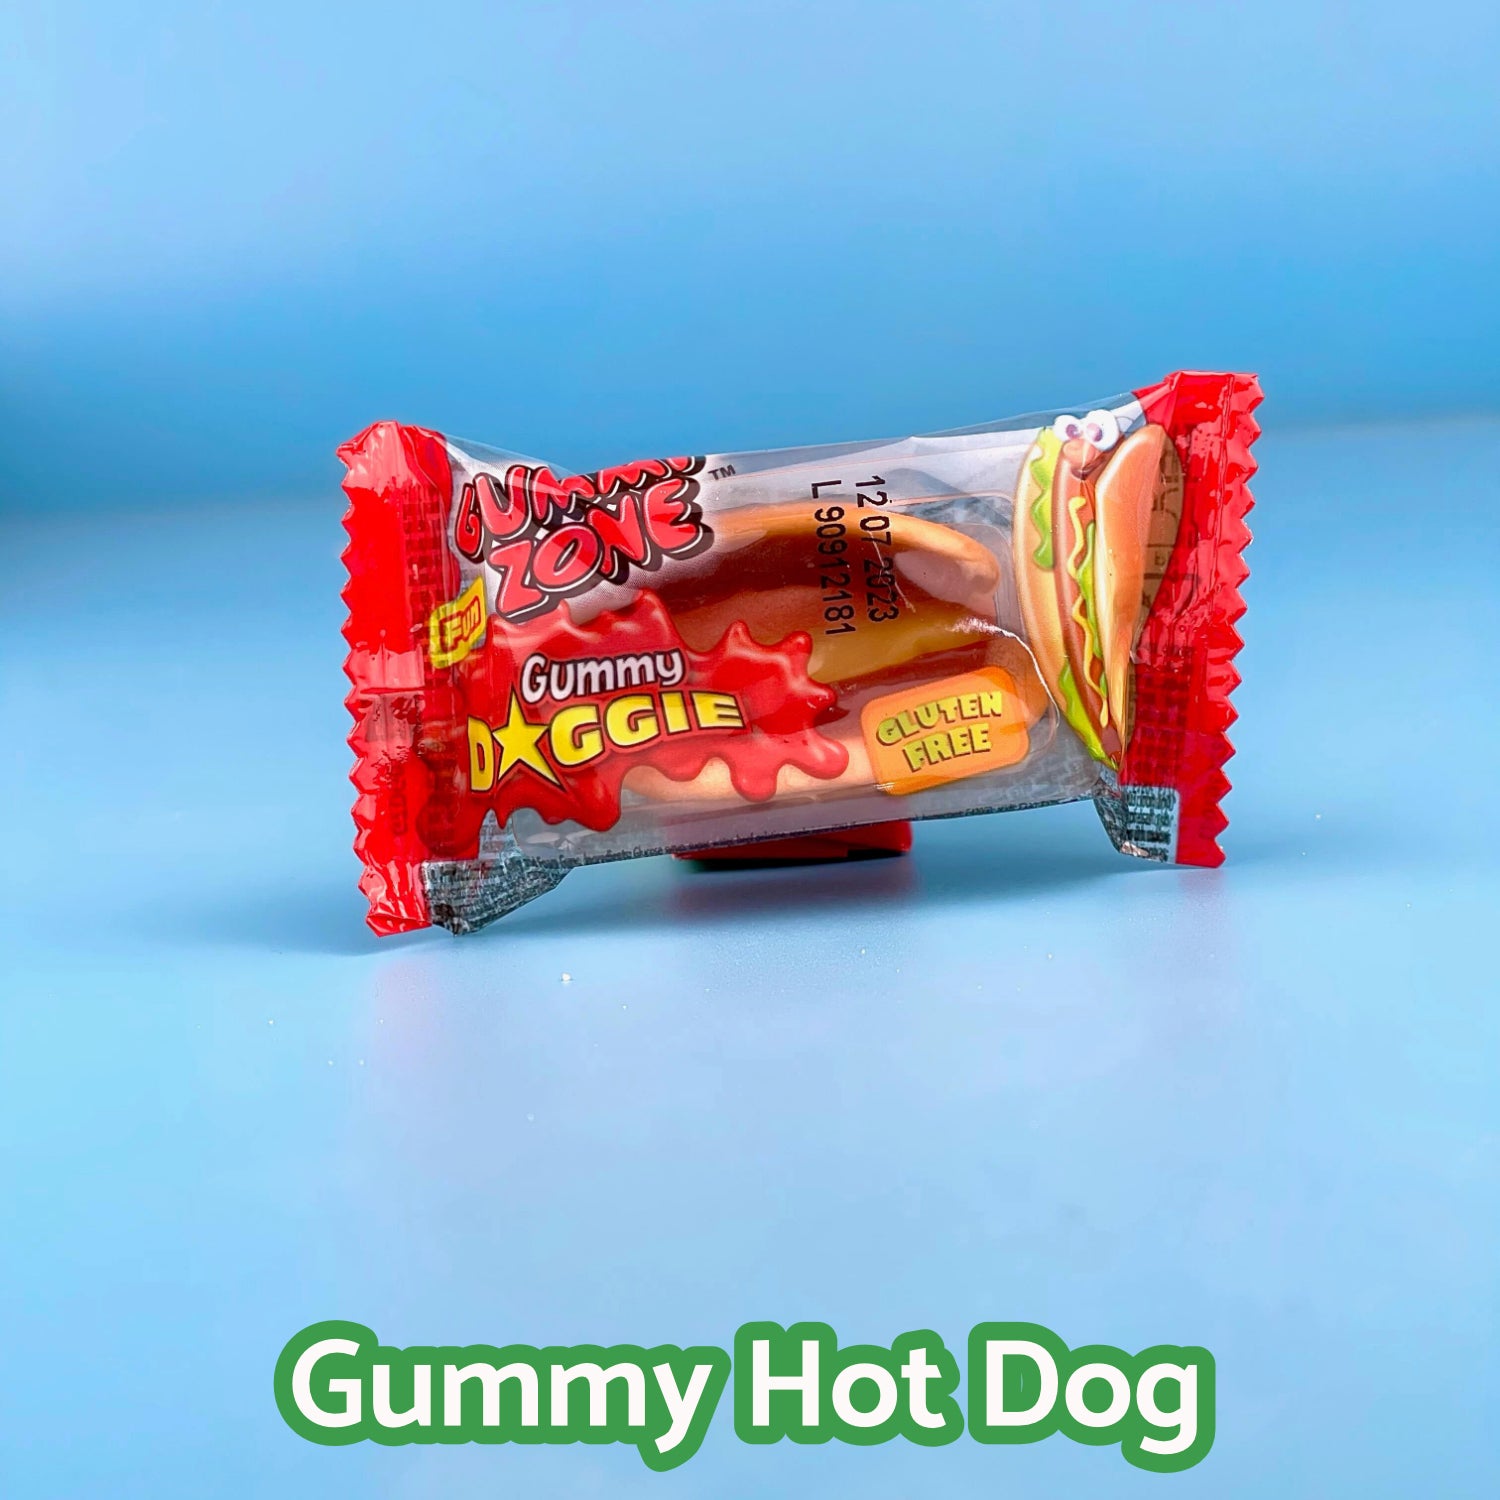 Gummy Hot Dog